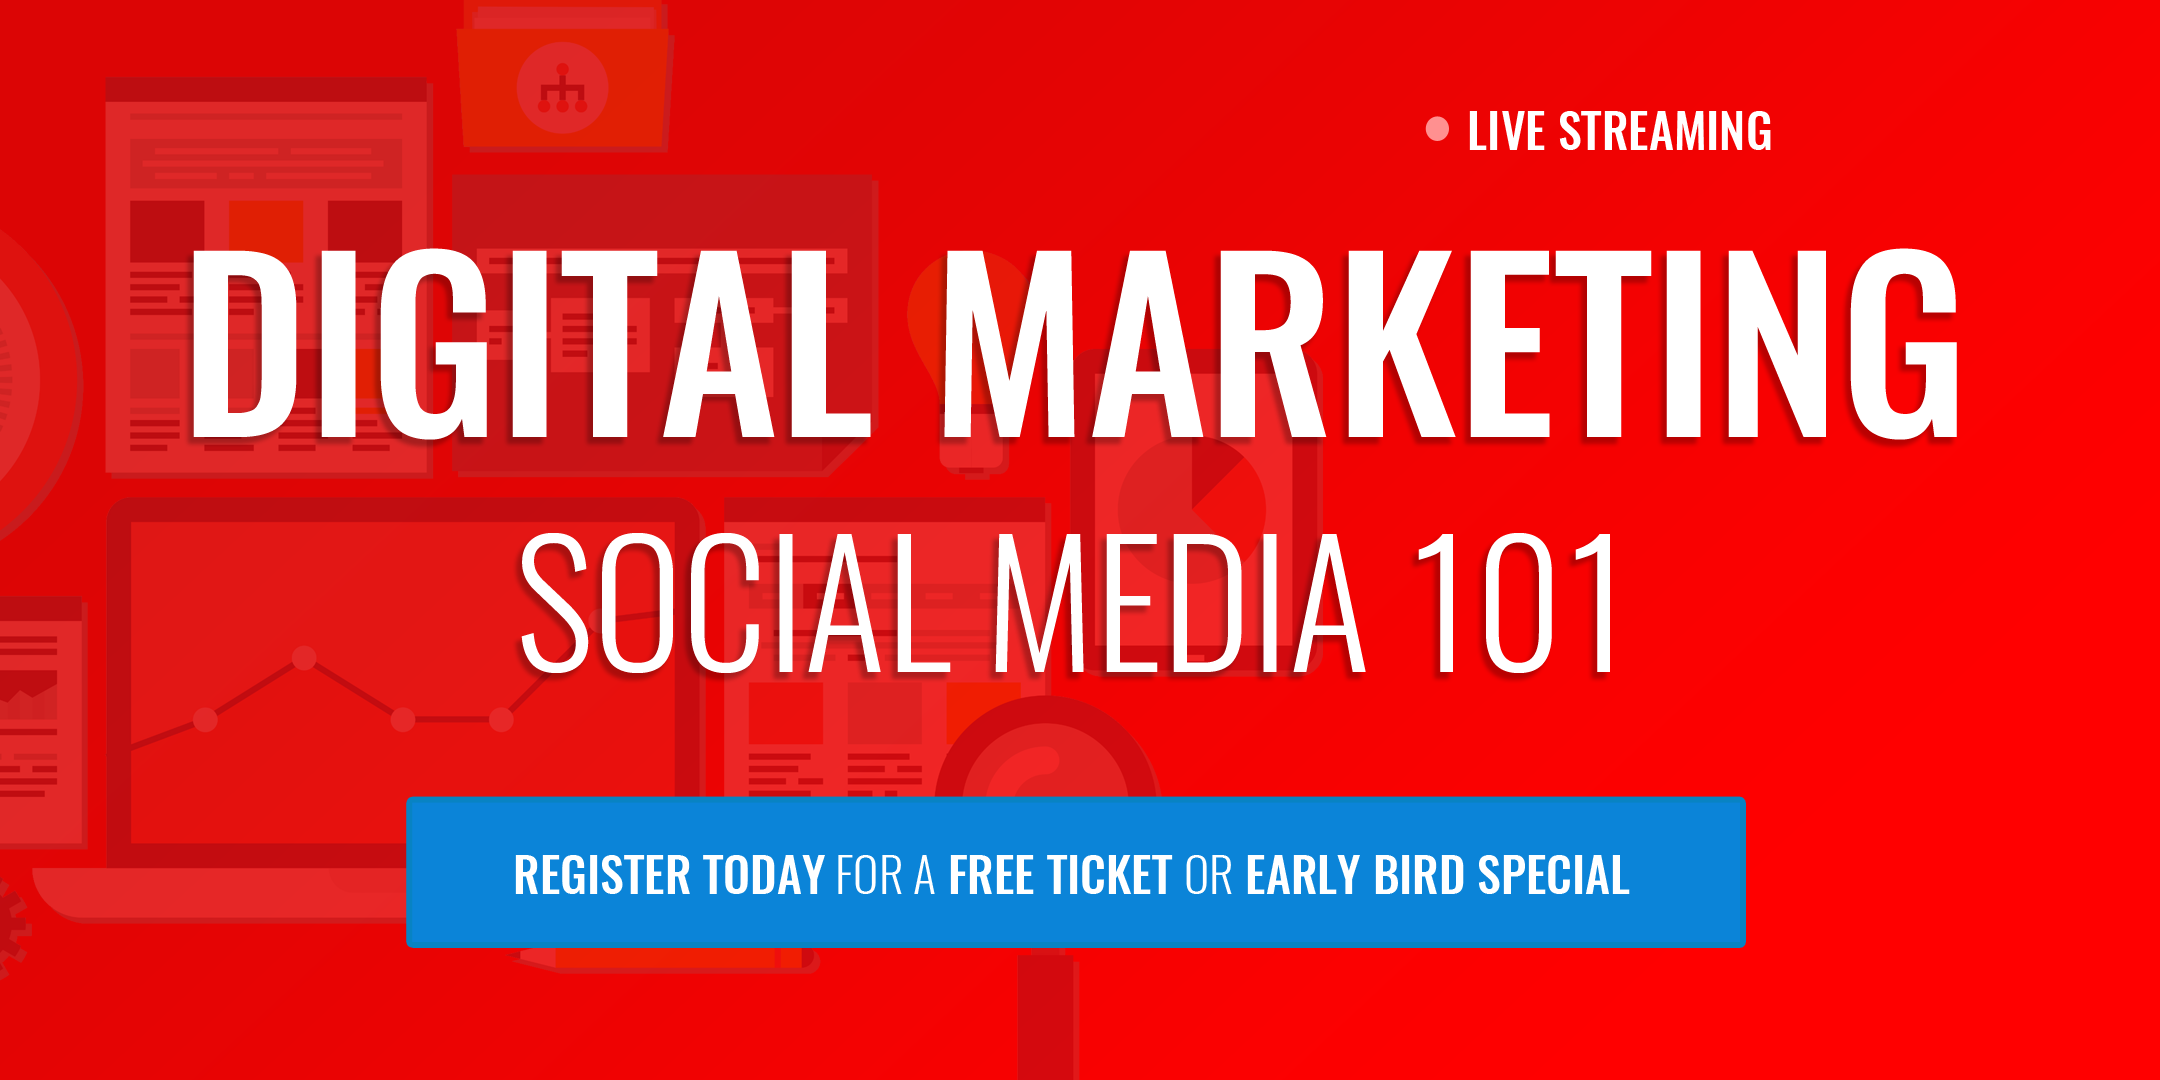 Digital Marketing Course: Social Media 101